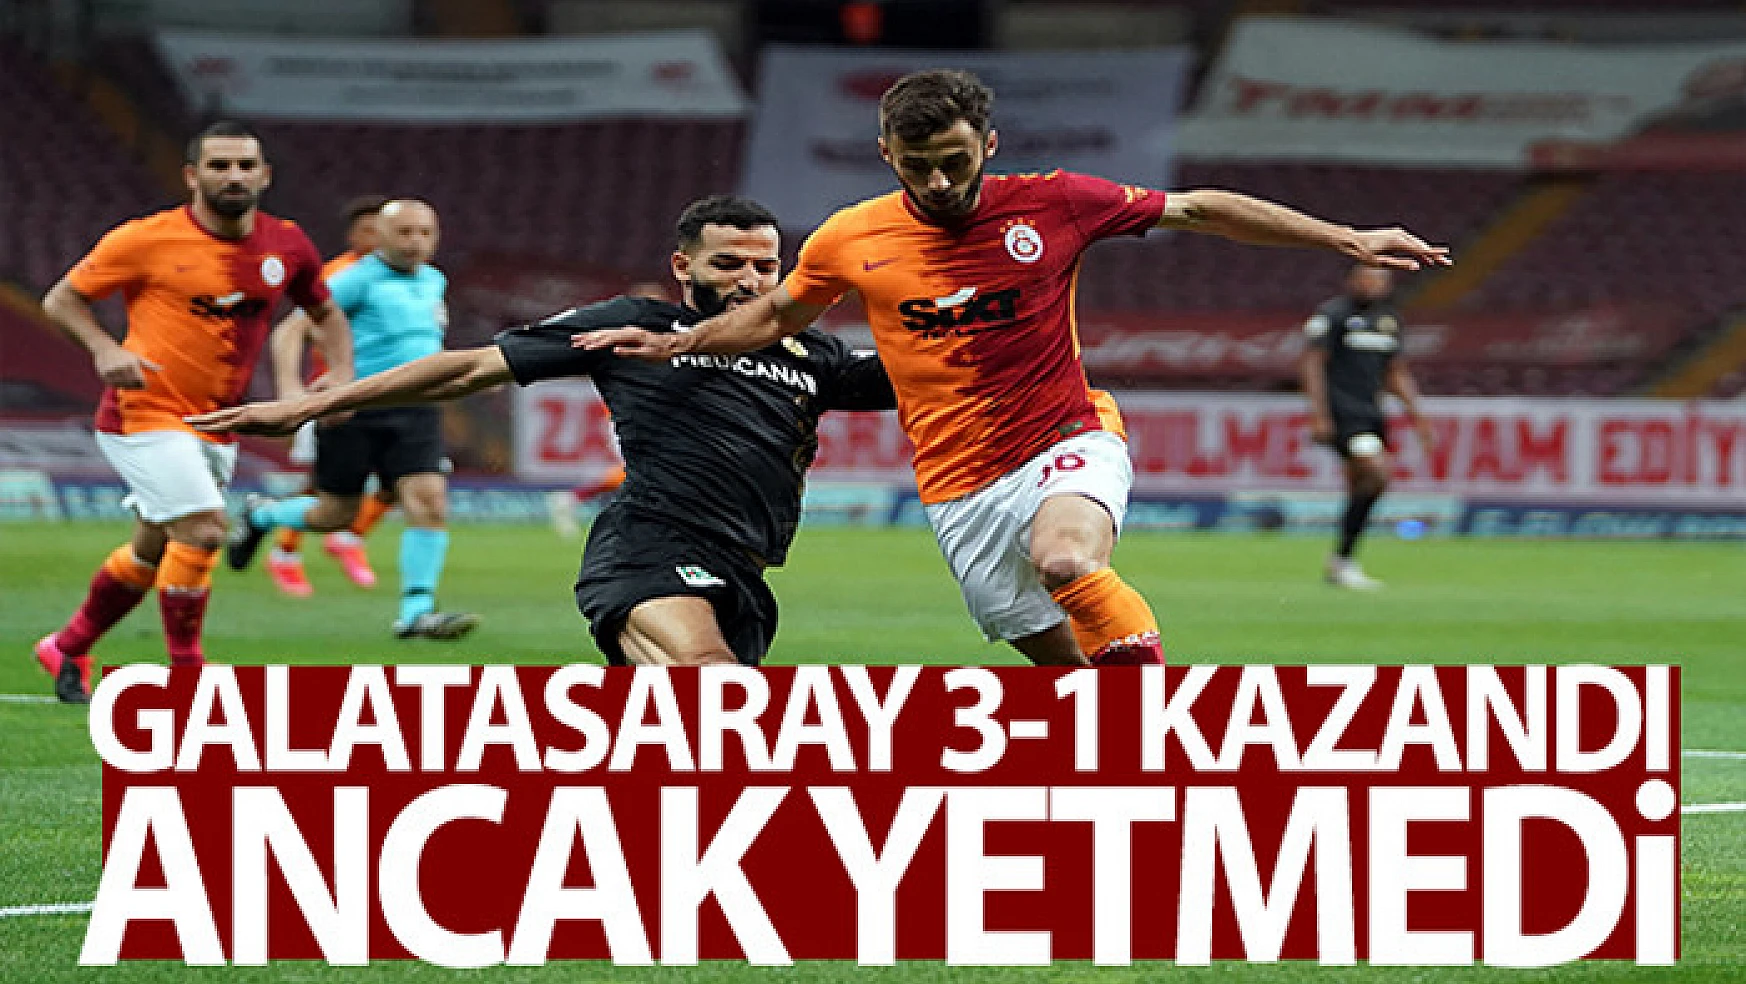 Galatasaray 3-1 kazandı ancak yetmedi!